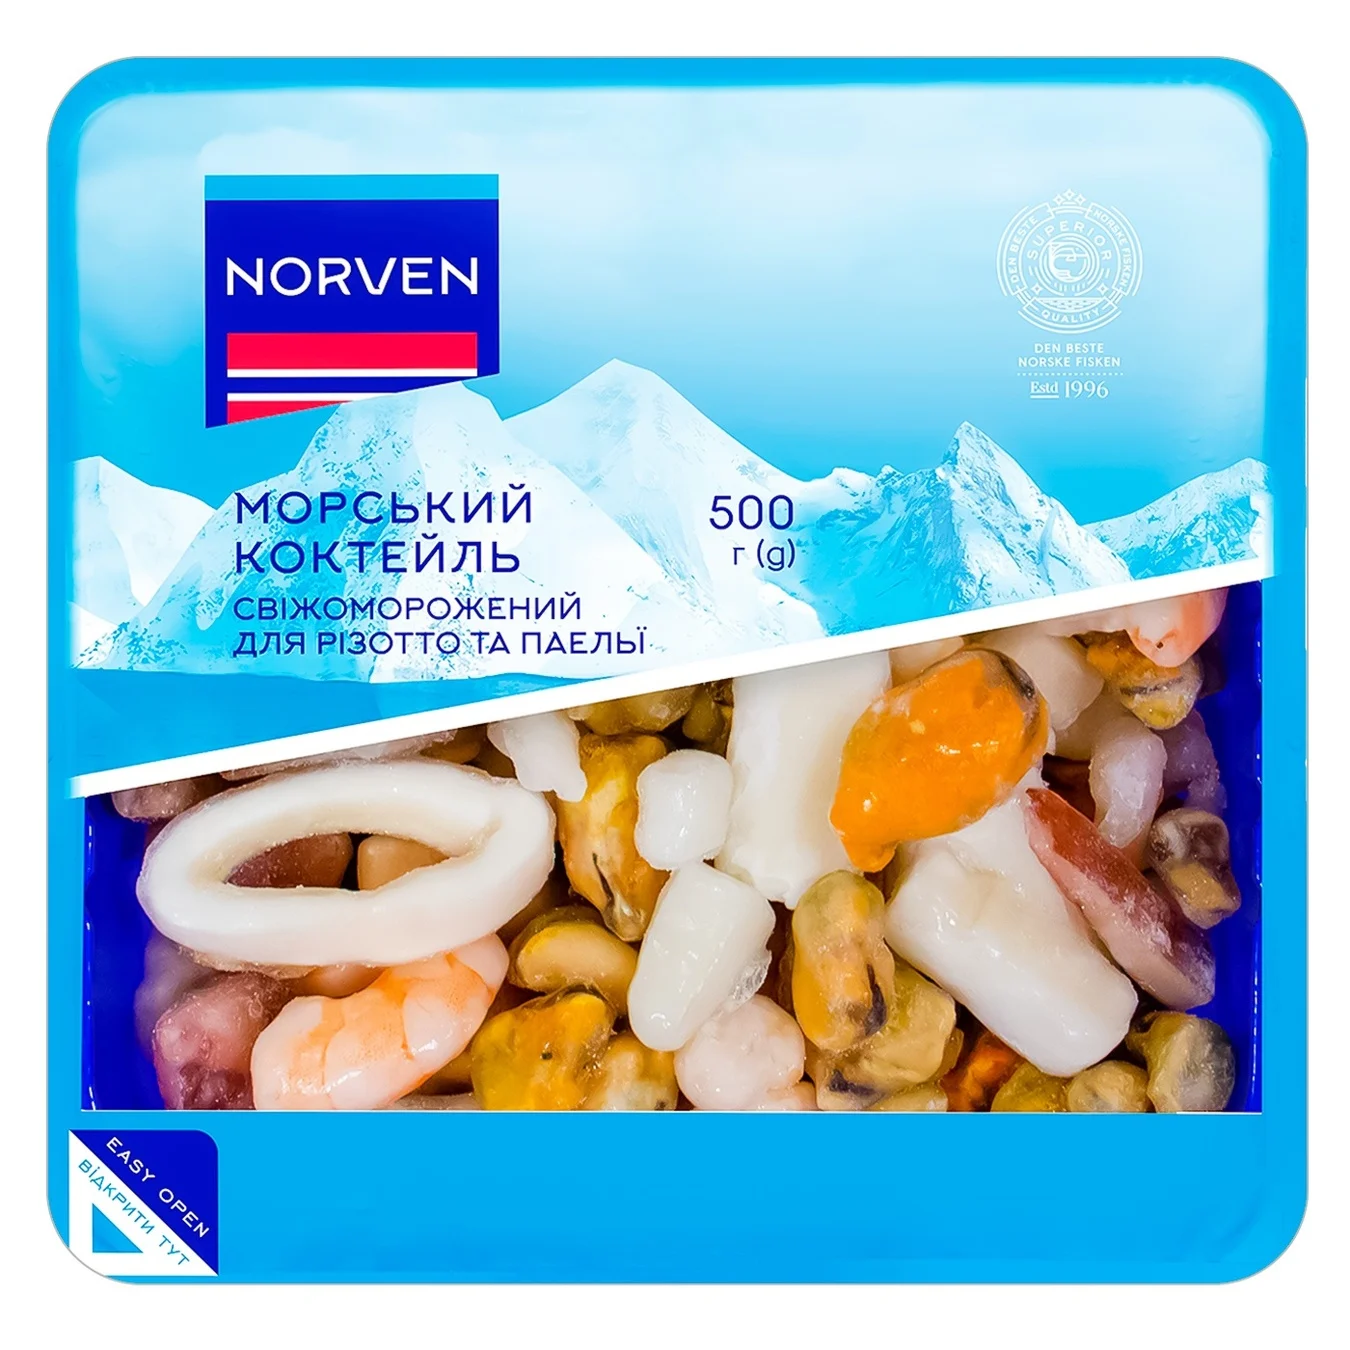 Морський коктейль Norven для різотто та паельї свіжеморожений 500г